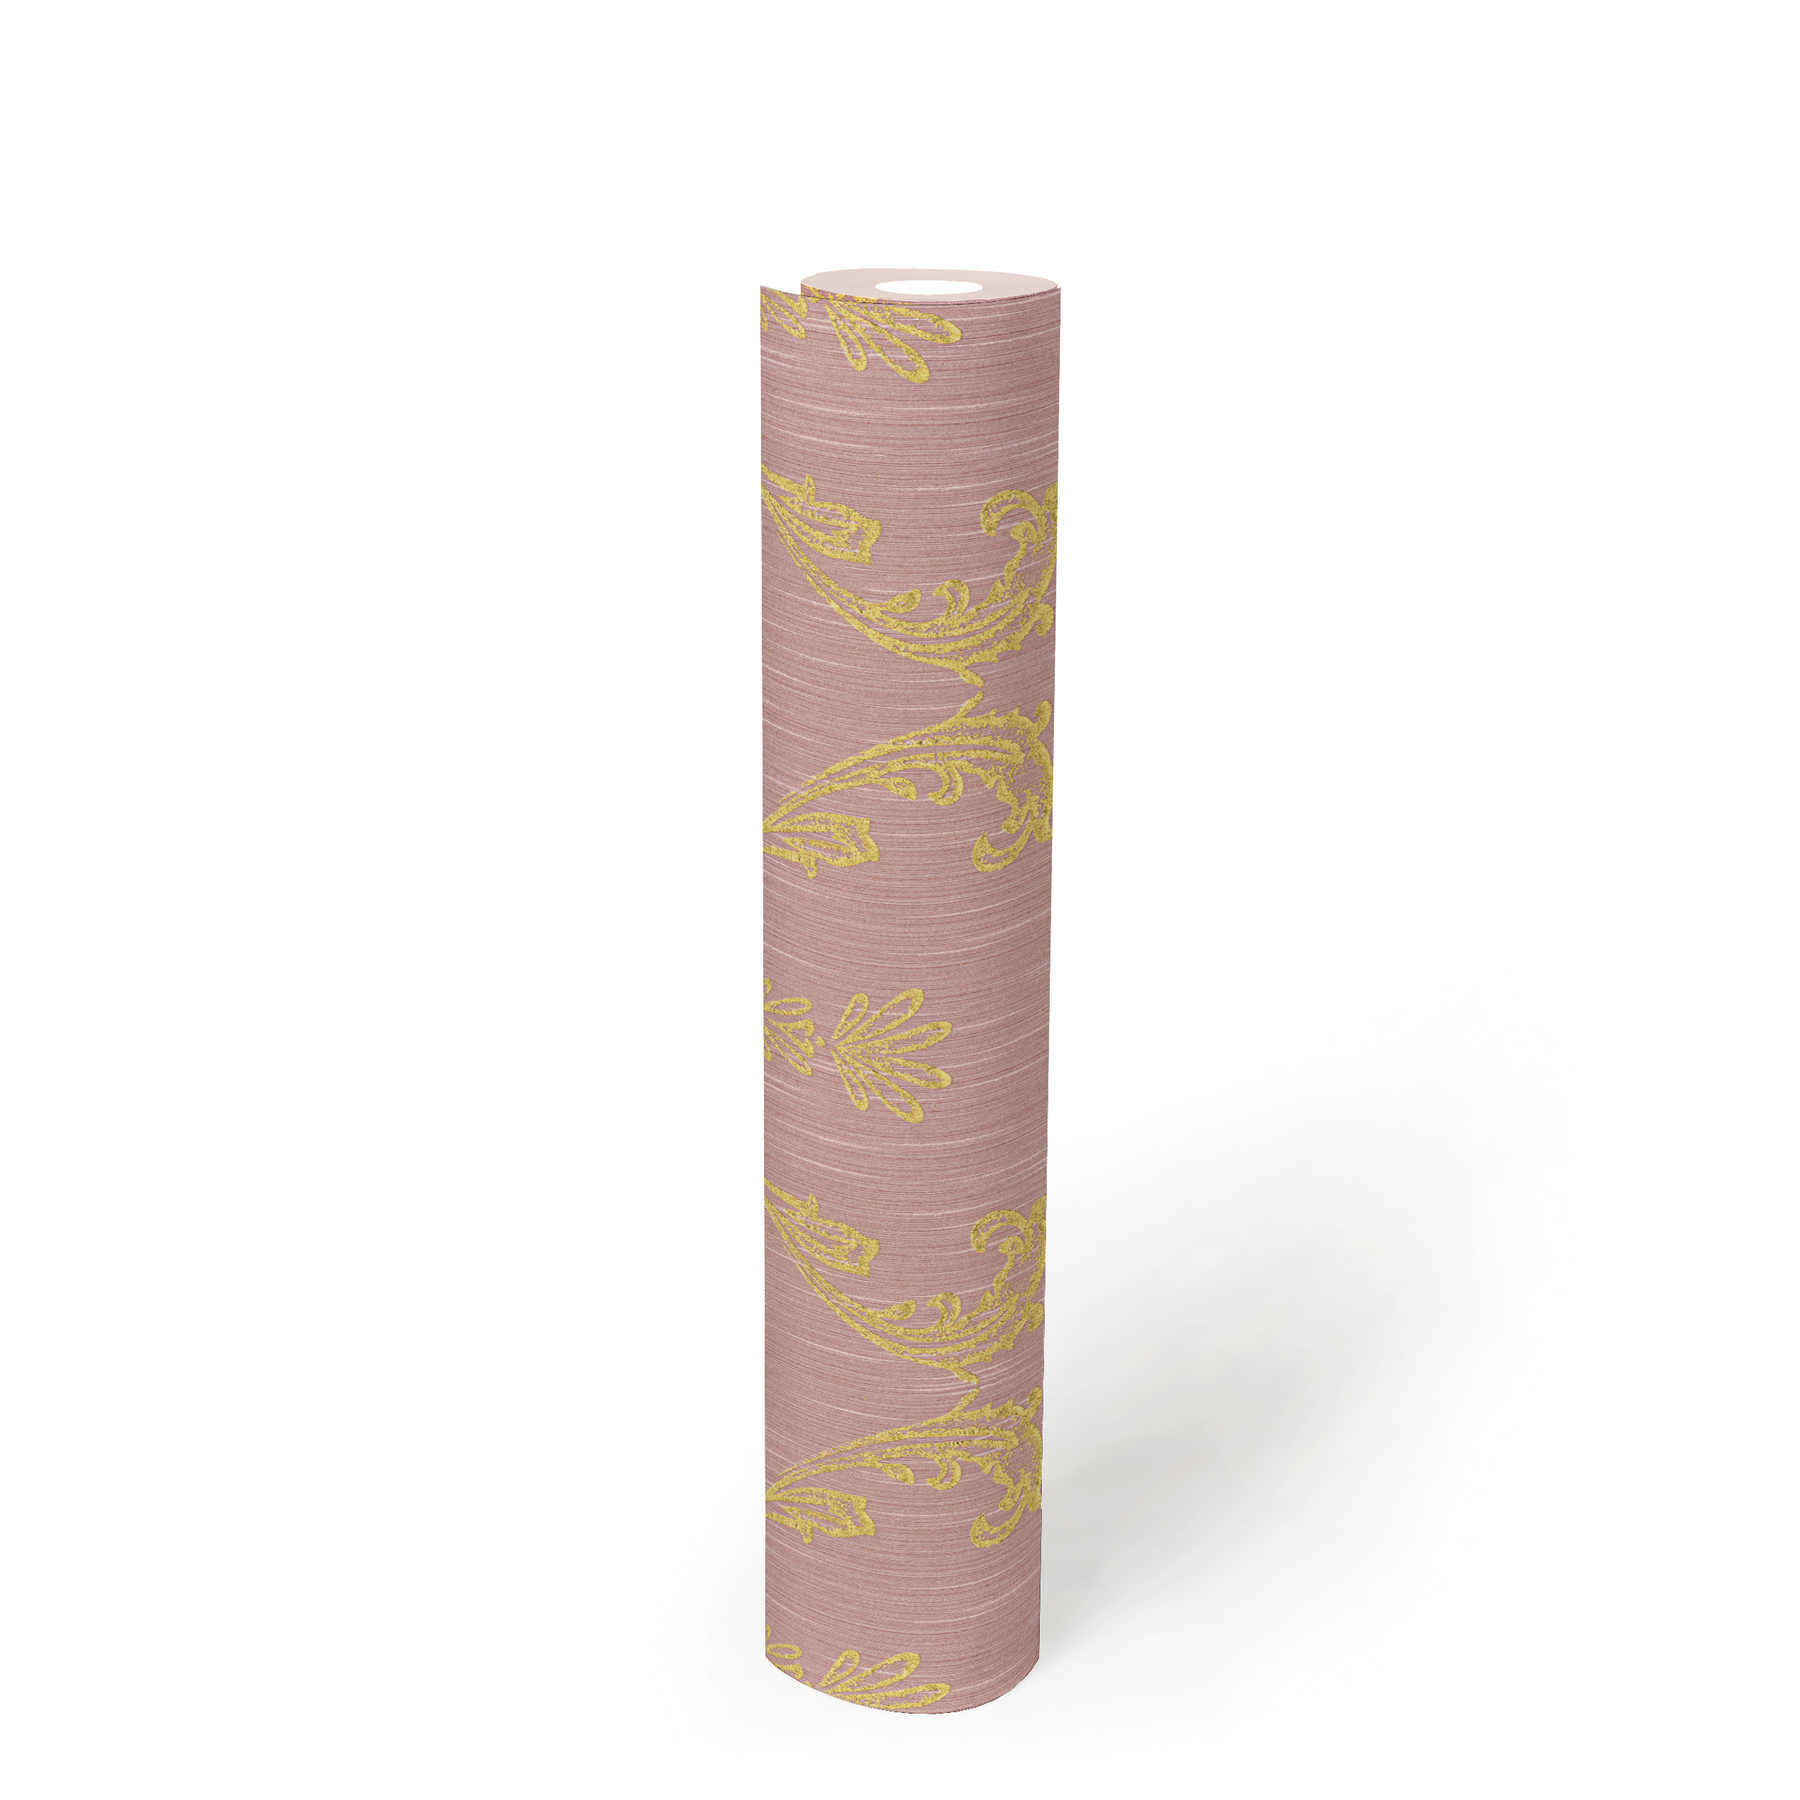             Papier peint ornemental avec éléments floraux dorés - or, rose
        